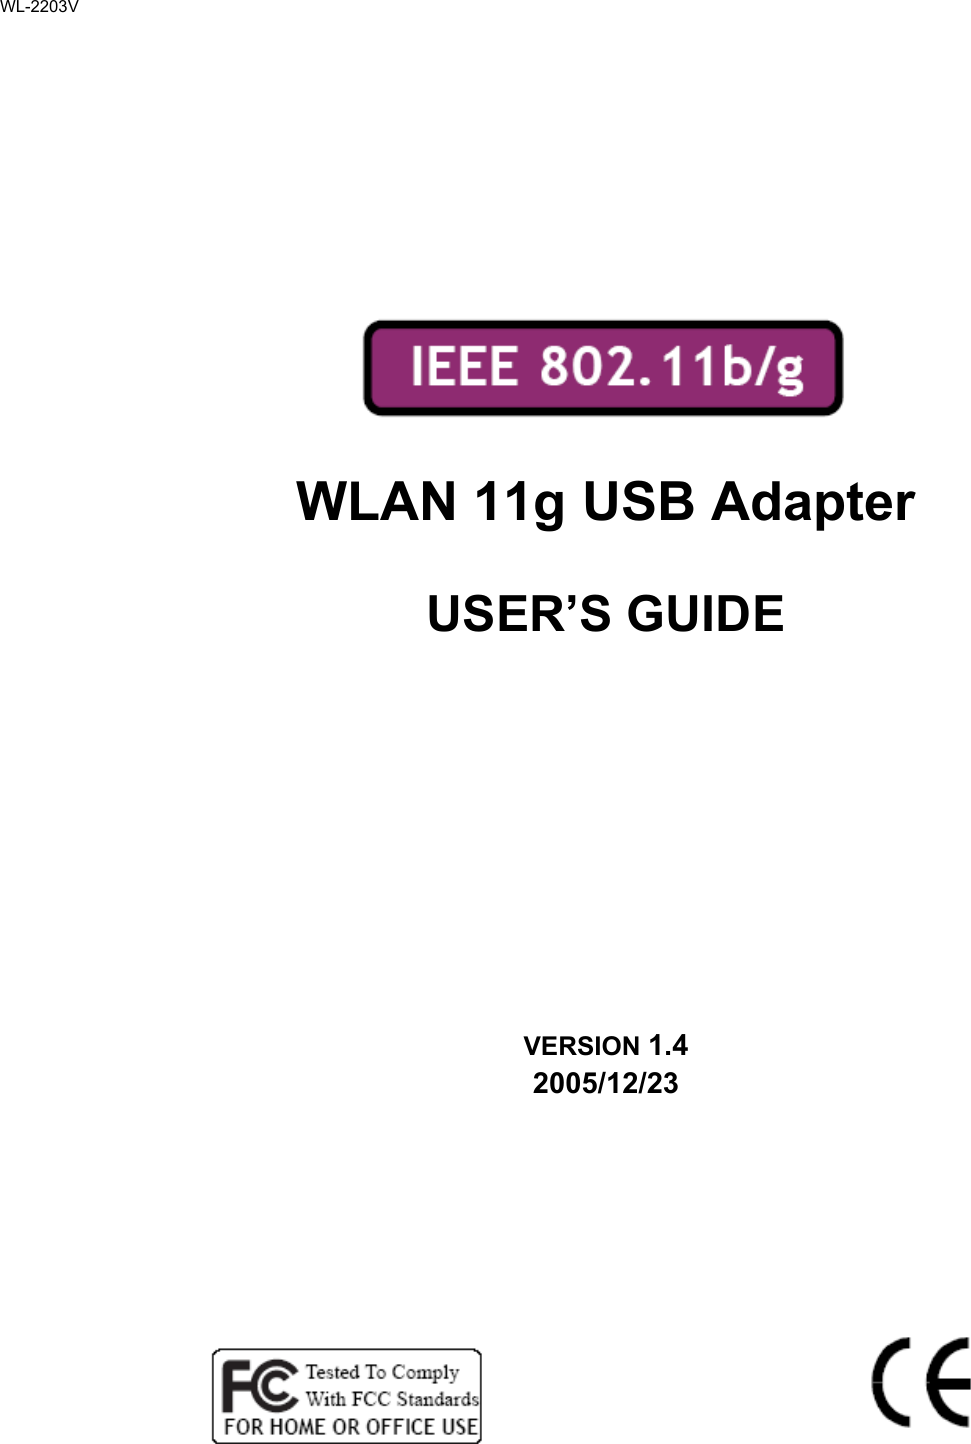          WLAN 11g USB Adapter  USER’S GUIDE      VERSION 1.4 2005/12/23             WL-2203V